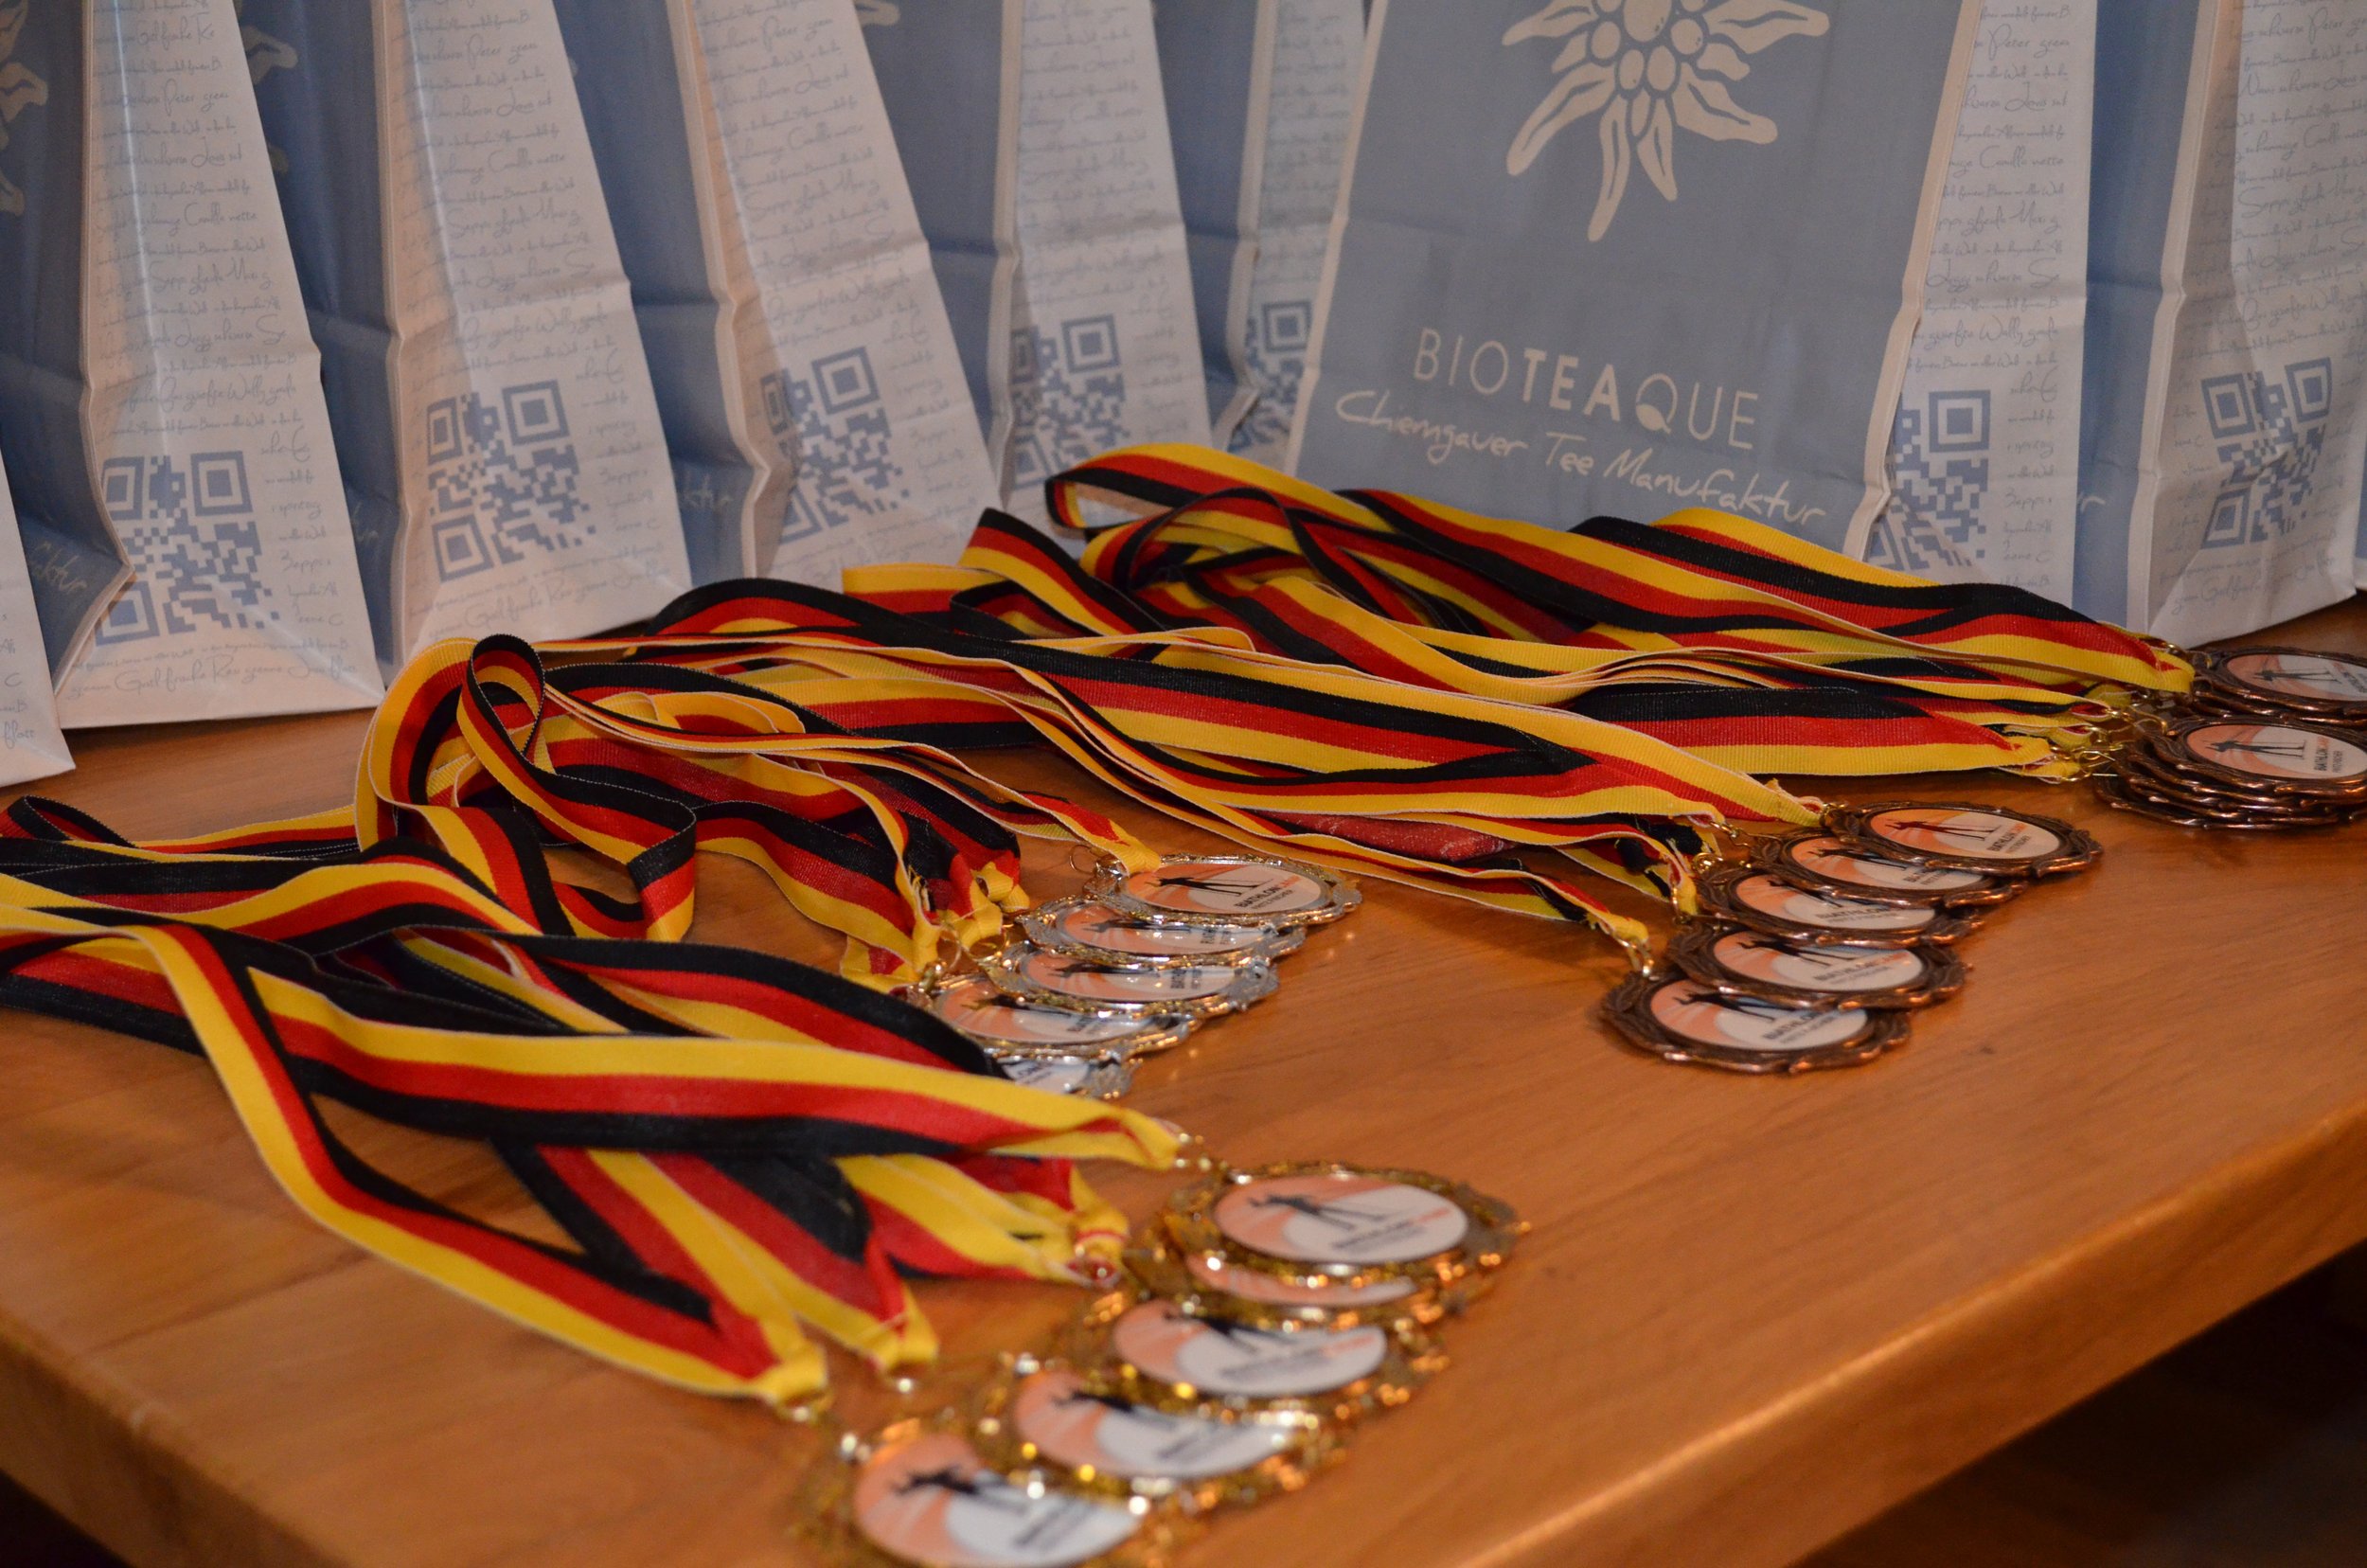 Die Medaillien von für die Gewinner des Biathloncamps von Fritz Fischer